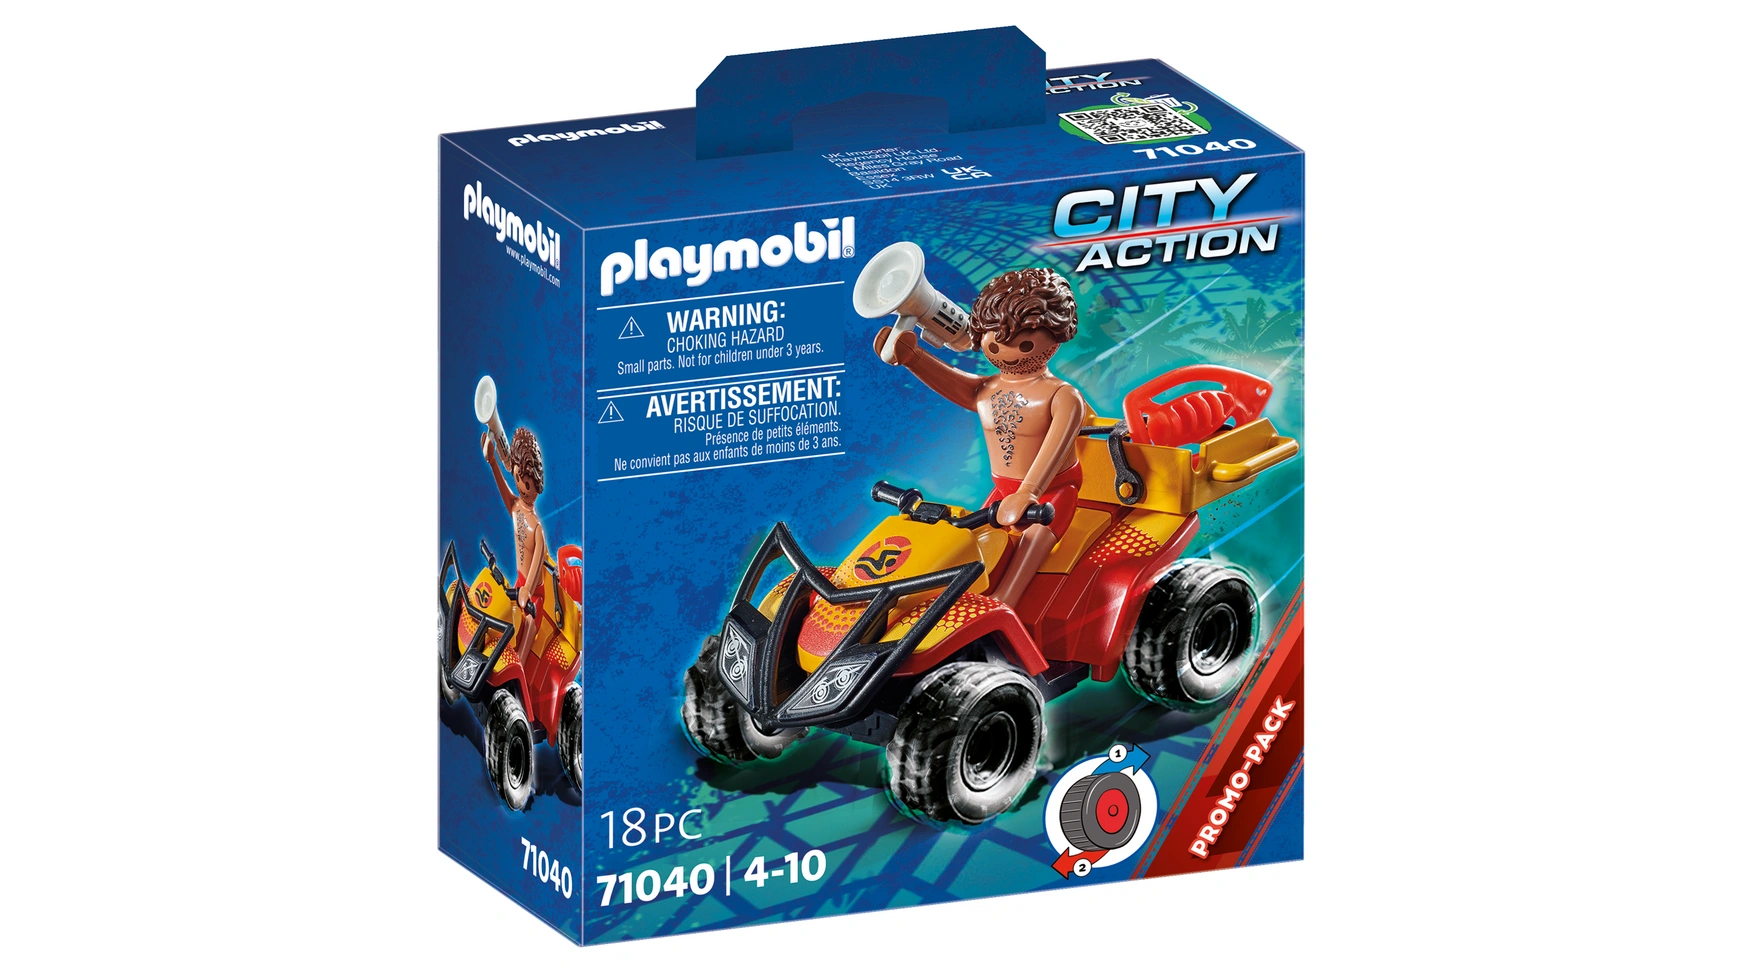 City action квадроцикл спасателя Playmobil конструктор playmobil city action 5399 семья у стойки регистрации